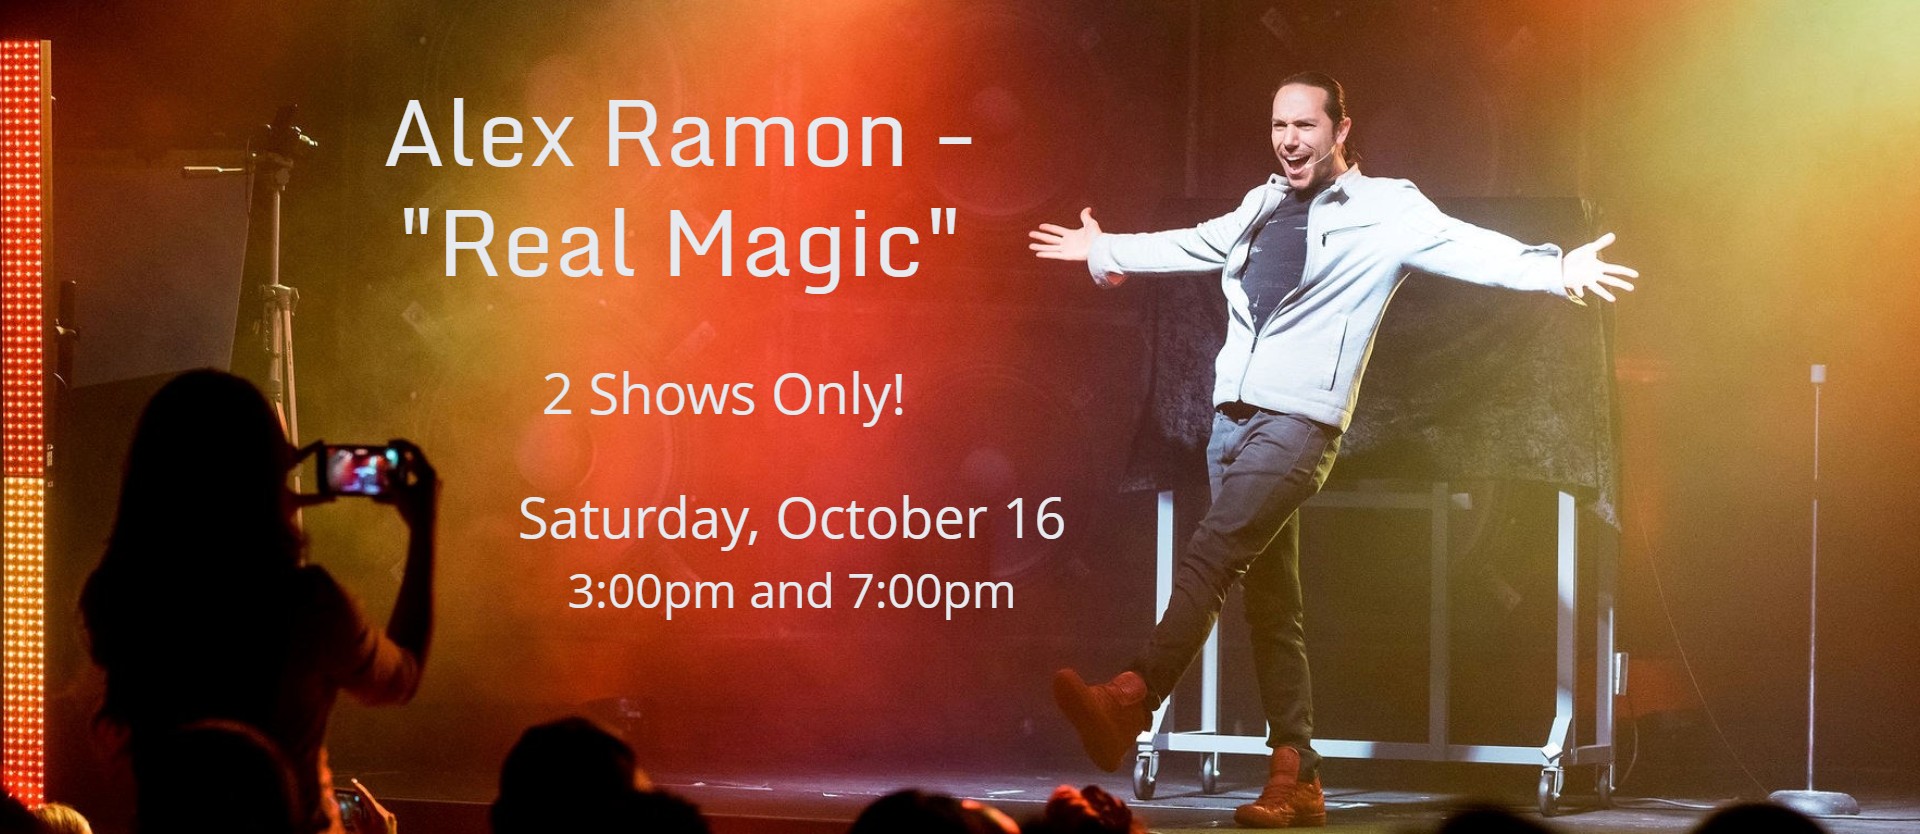 Alex Ramon - "Real Magic"